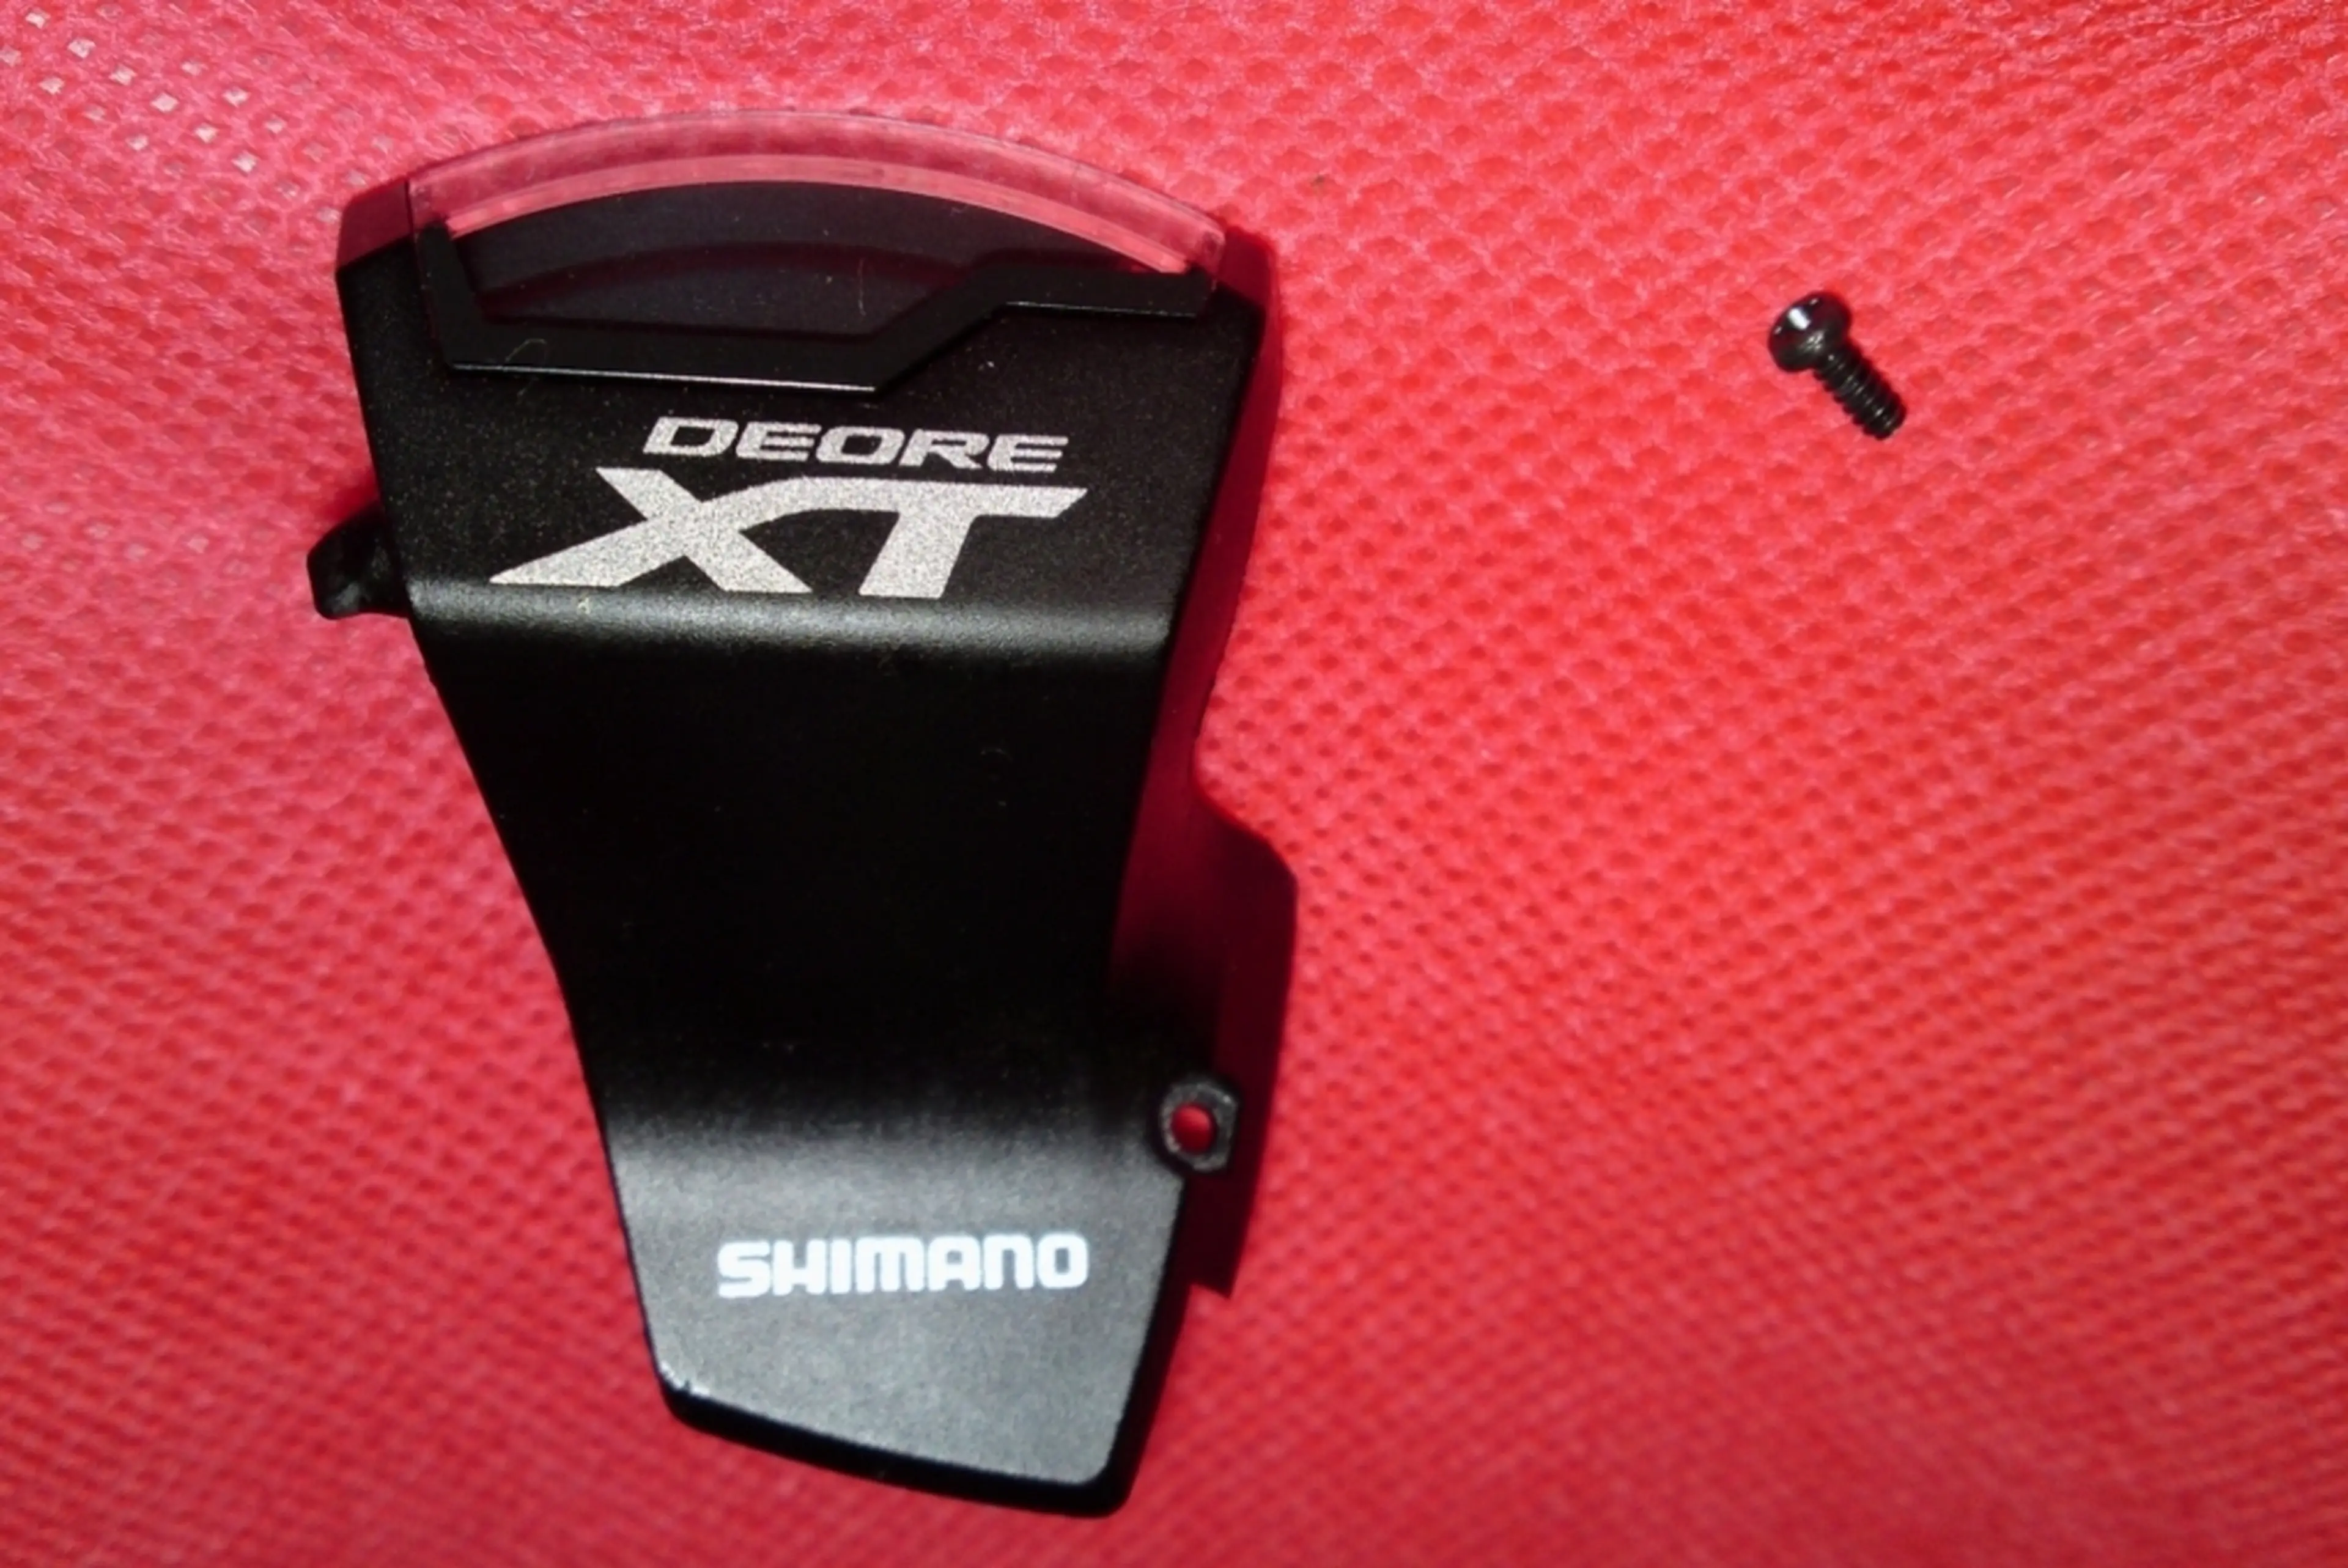 1. Afisaj maneta Shimano SL-M8000 11 viteze